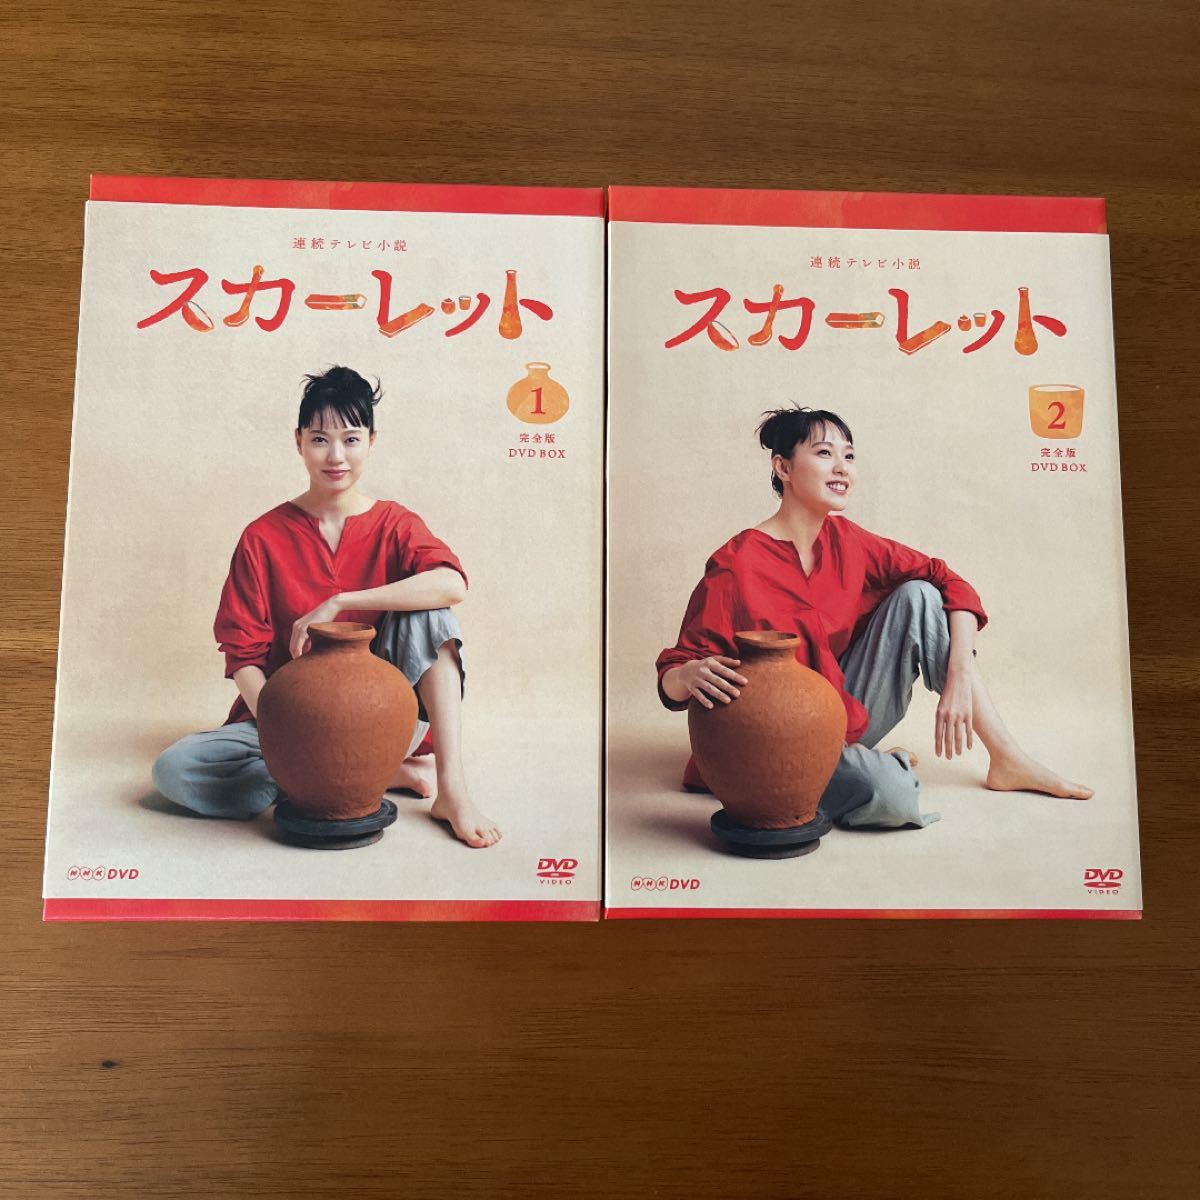 連続テレビ小説 べっぴんさん 完全版 DVD BOX1, 超特価美品 www.m 